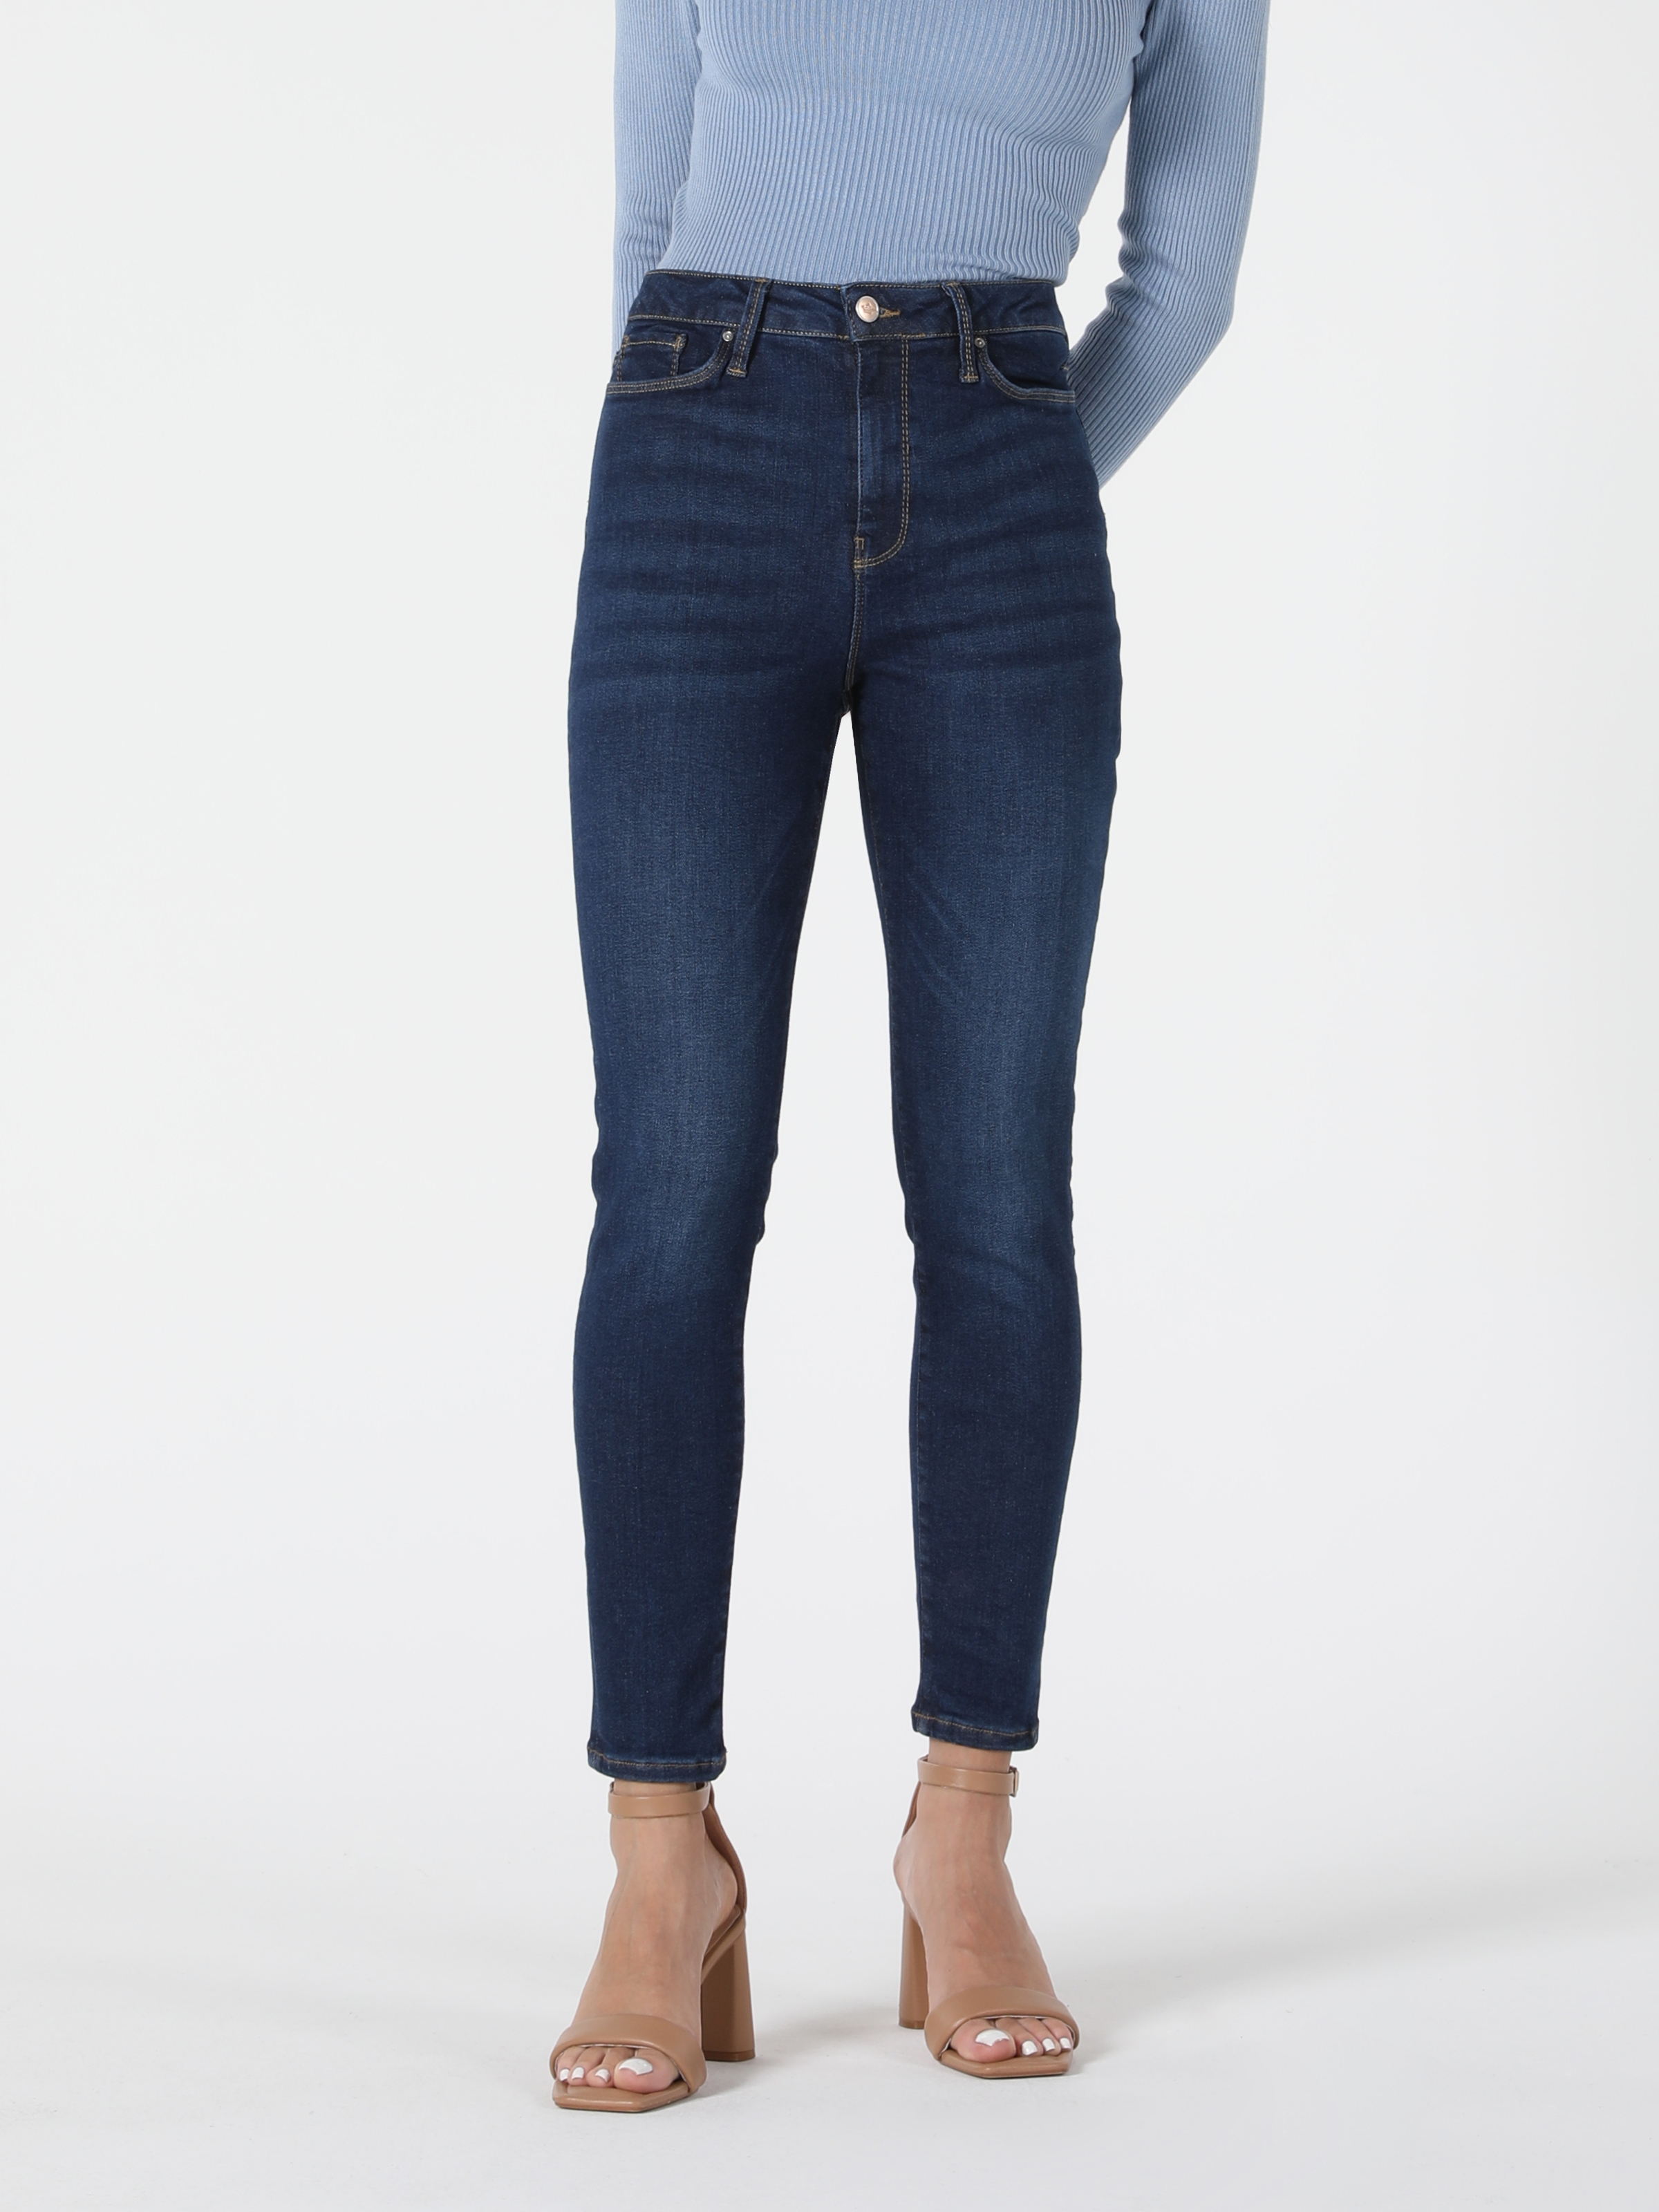 Afficher les détails de Selfsızed 760 Diana Pantalon Taille Haute Coupe Super Slim Jambe Skinny Bleu Pour Femme